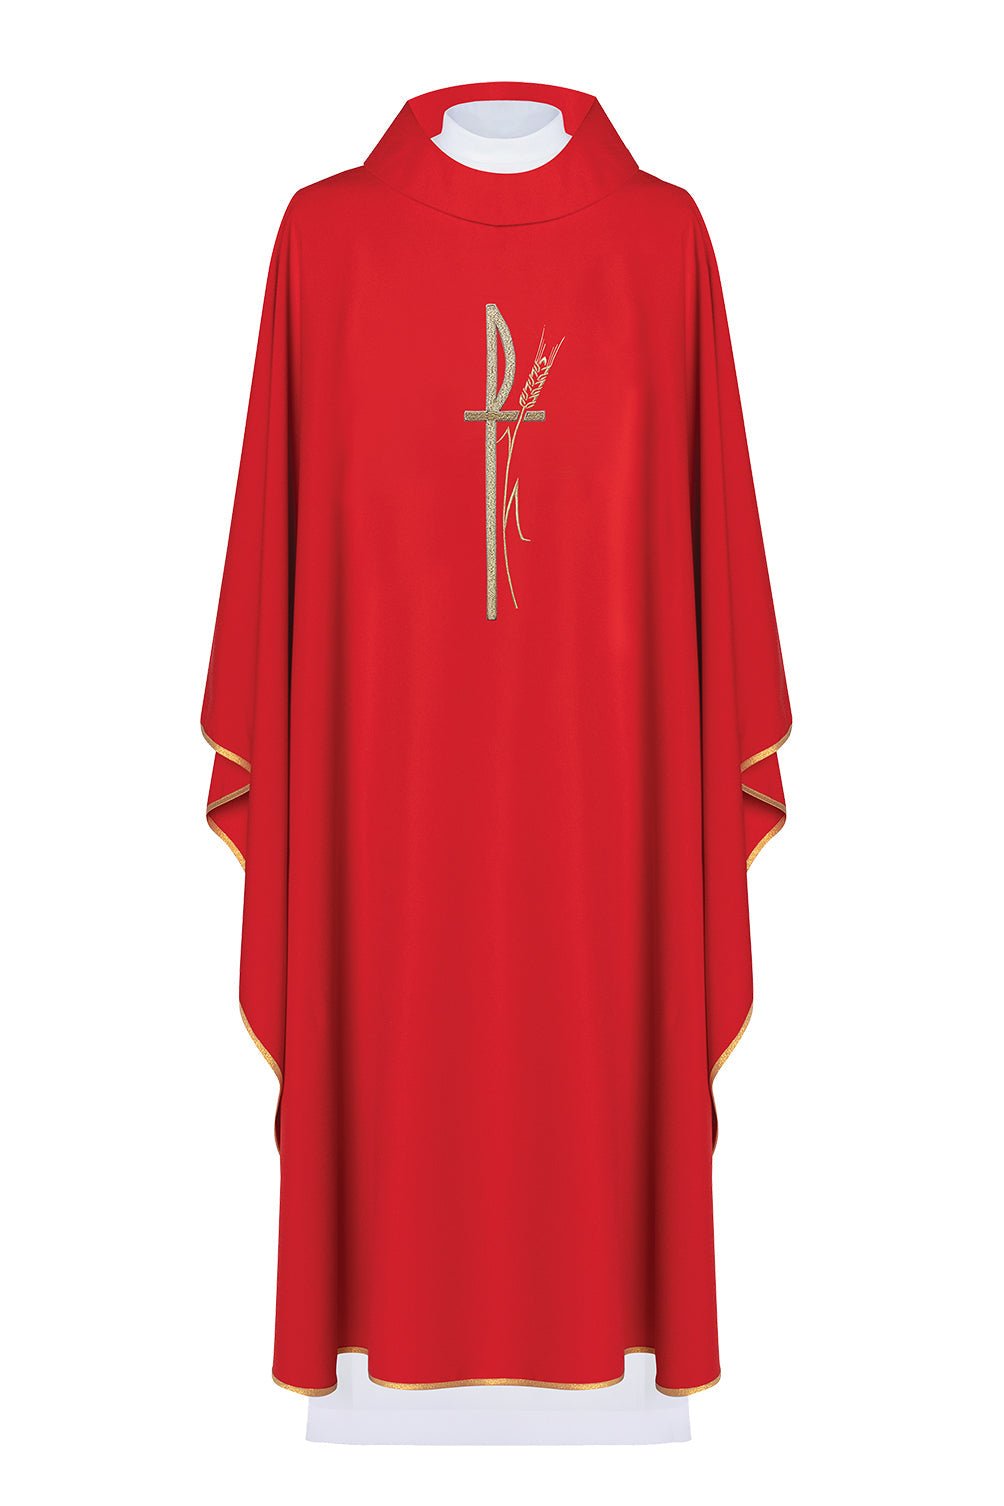 Czerwony ornat liturgiczny z haftowanym krzyżem